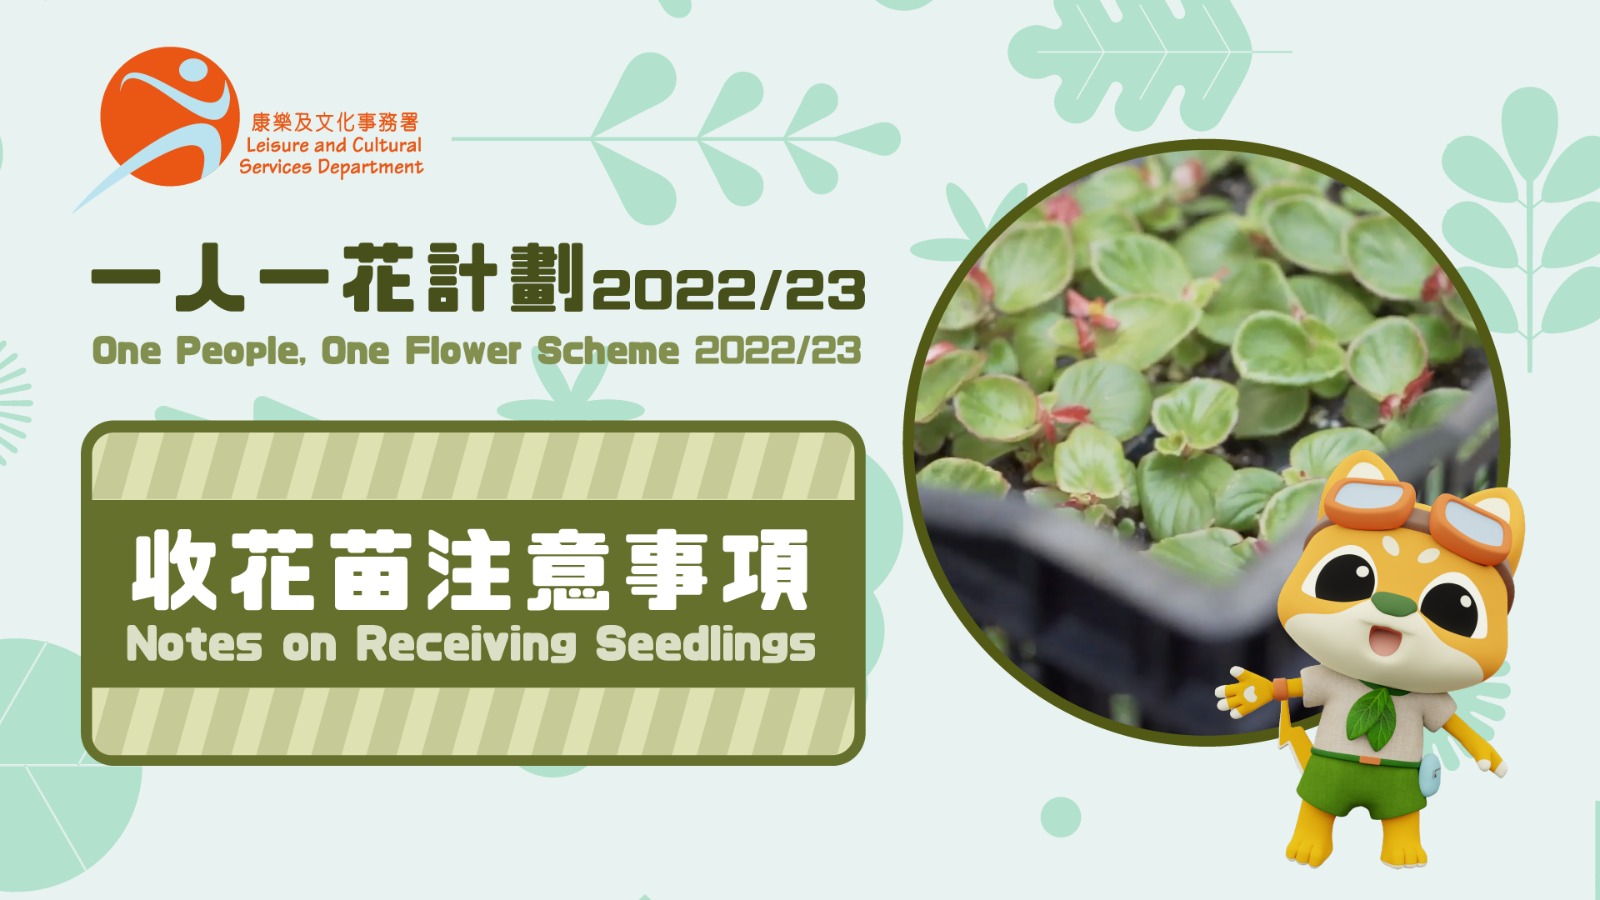 Notes on Receiving Seedlings